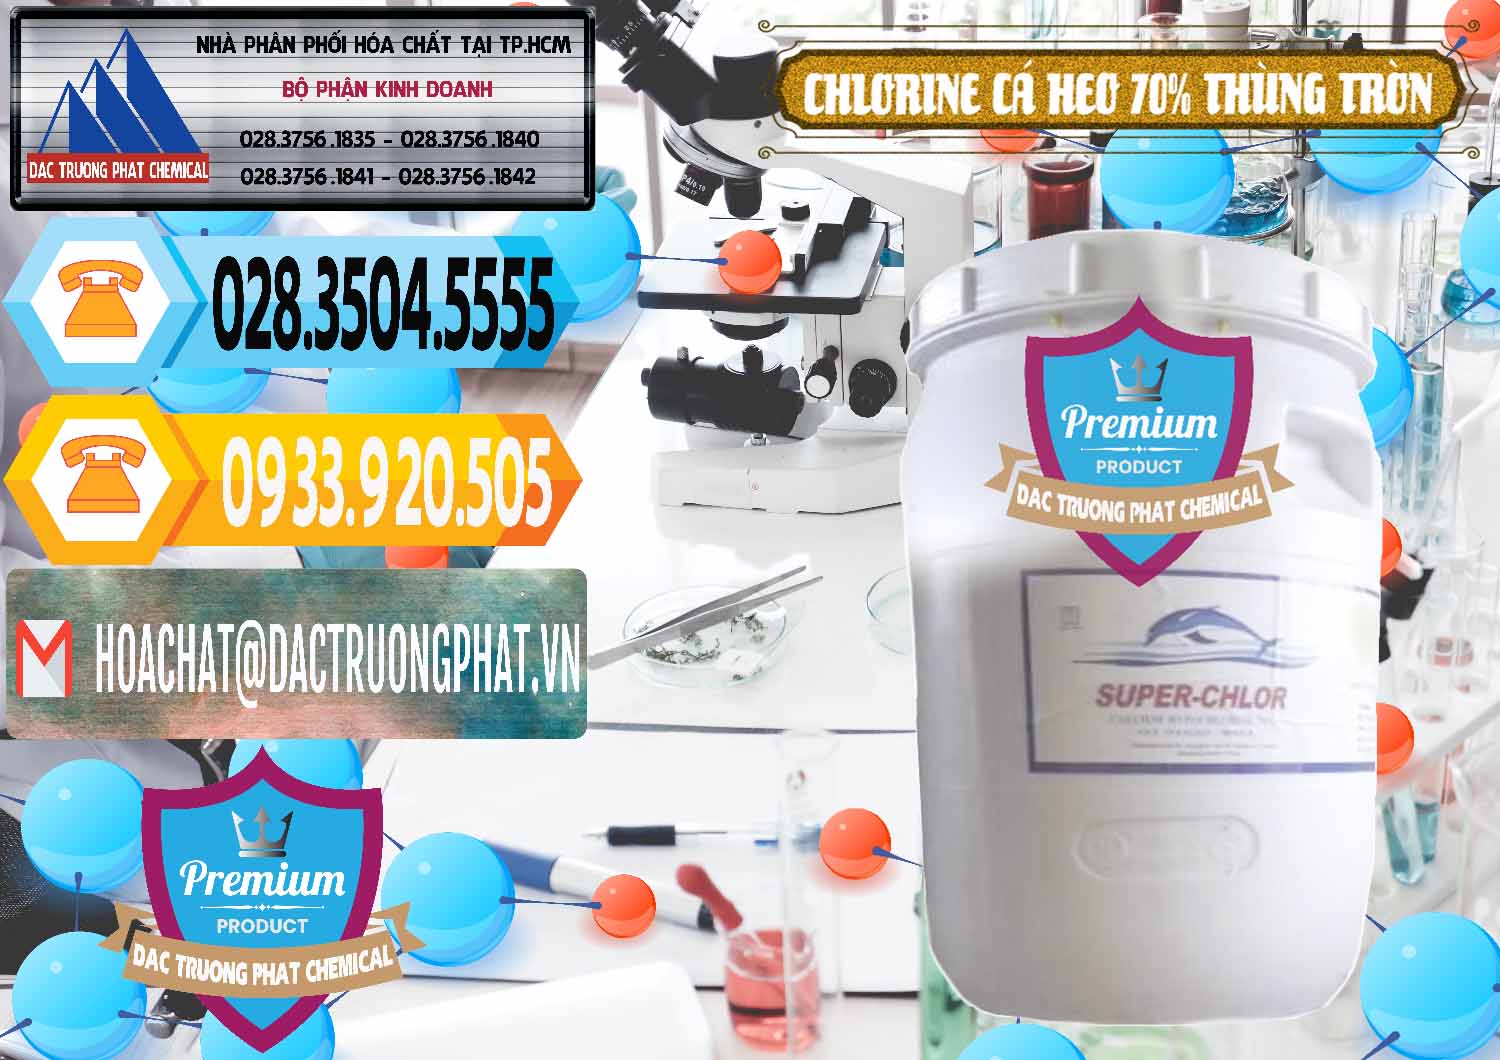 Công ty cung cấp ( bán ) Clorin - Chlorine Cá Heo 70% Super Chlor Thùng Tròn Nắp Trắng Trung Quốc China - 0239 - Công ty chuyên cung cấp ( kinh doanh ) hóa chất tại TP.HCM - hoachattayrua.net